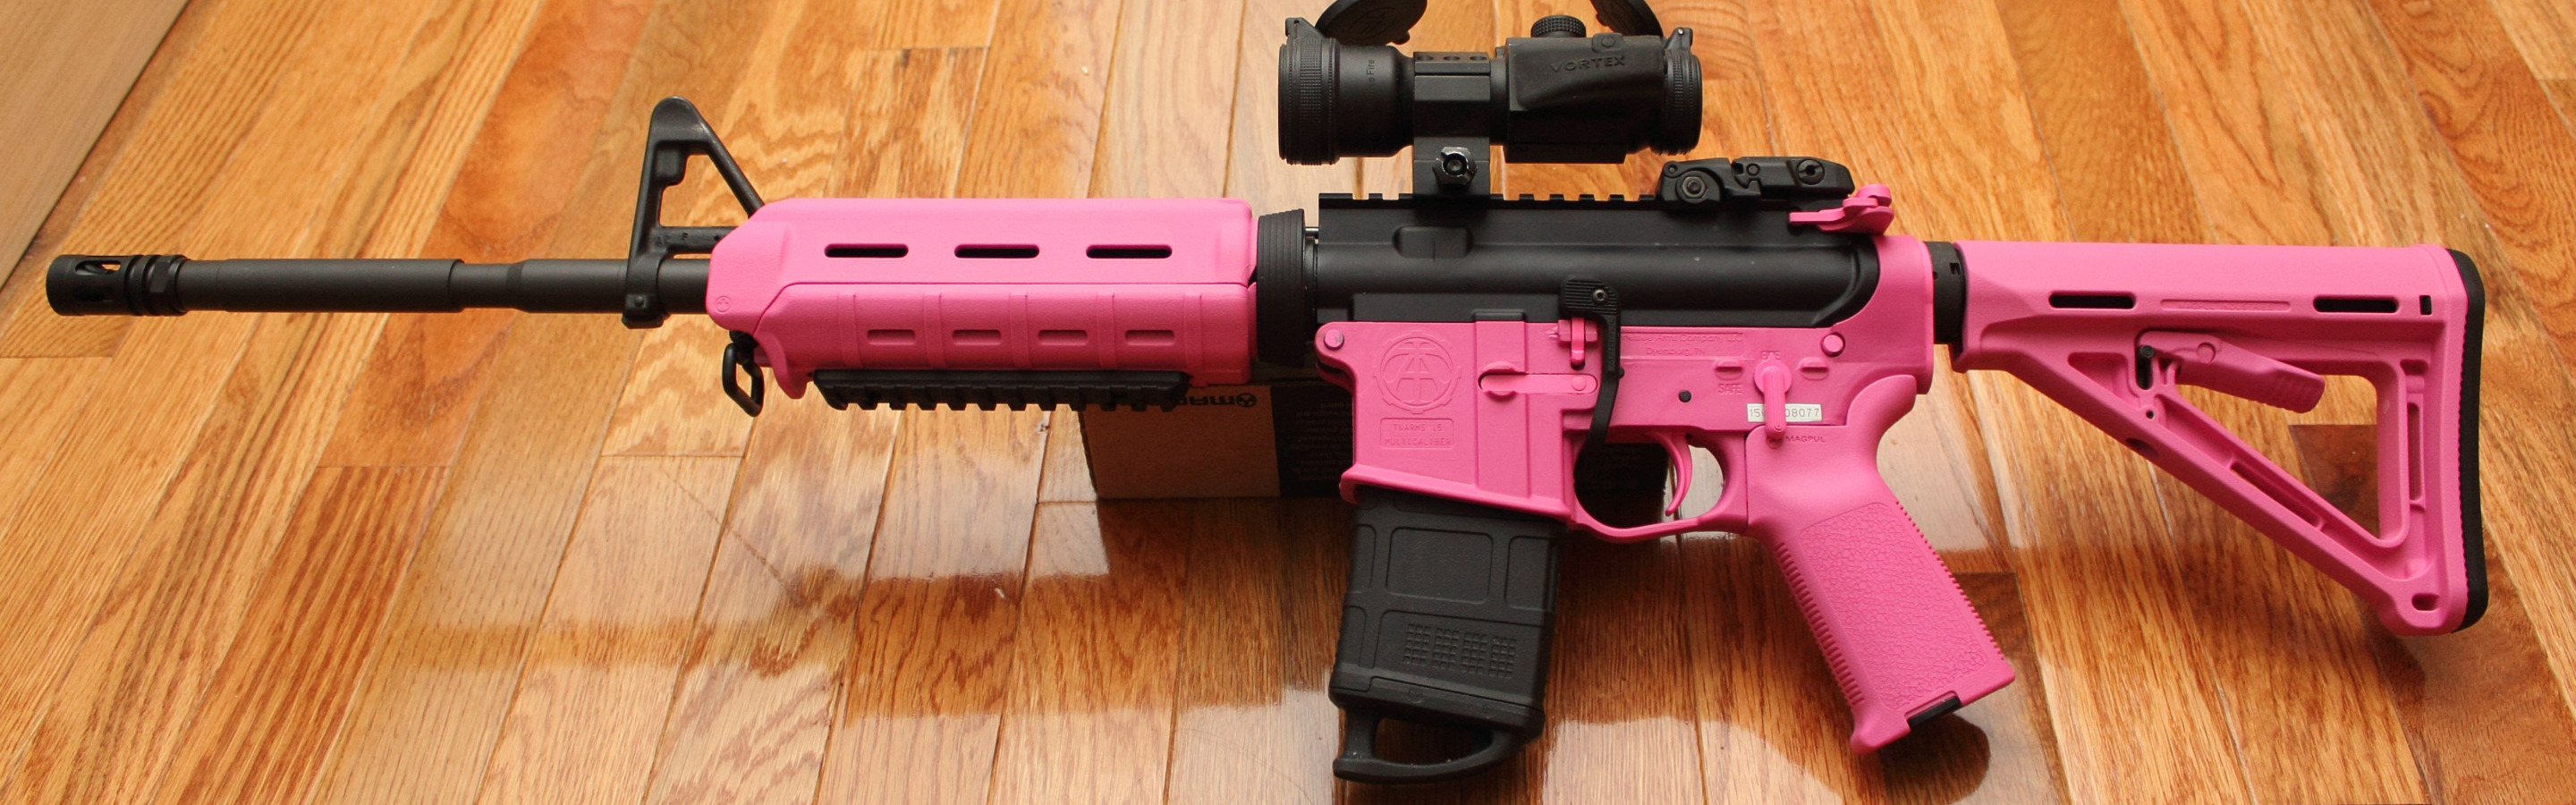 Обои для рабочего стола. pink, ar15, assault rifle, magpul. 